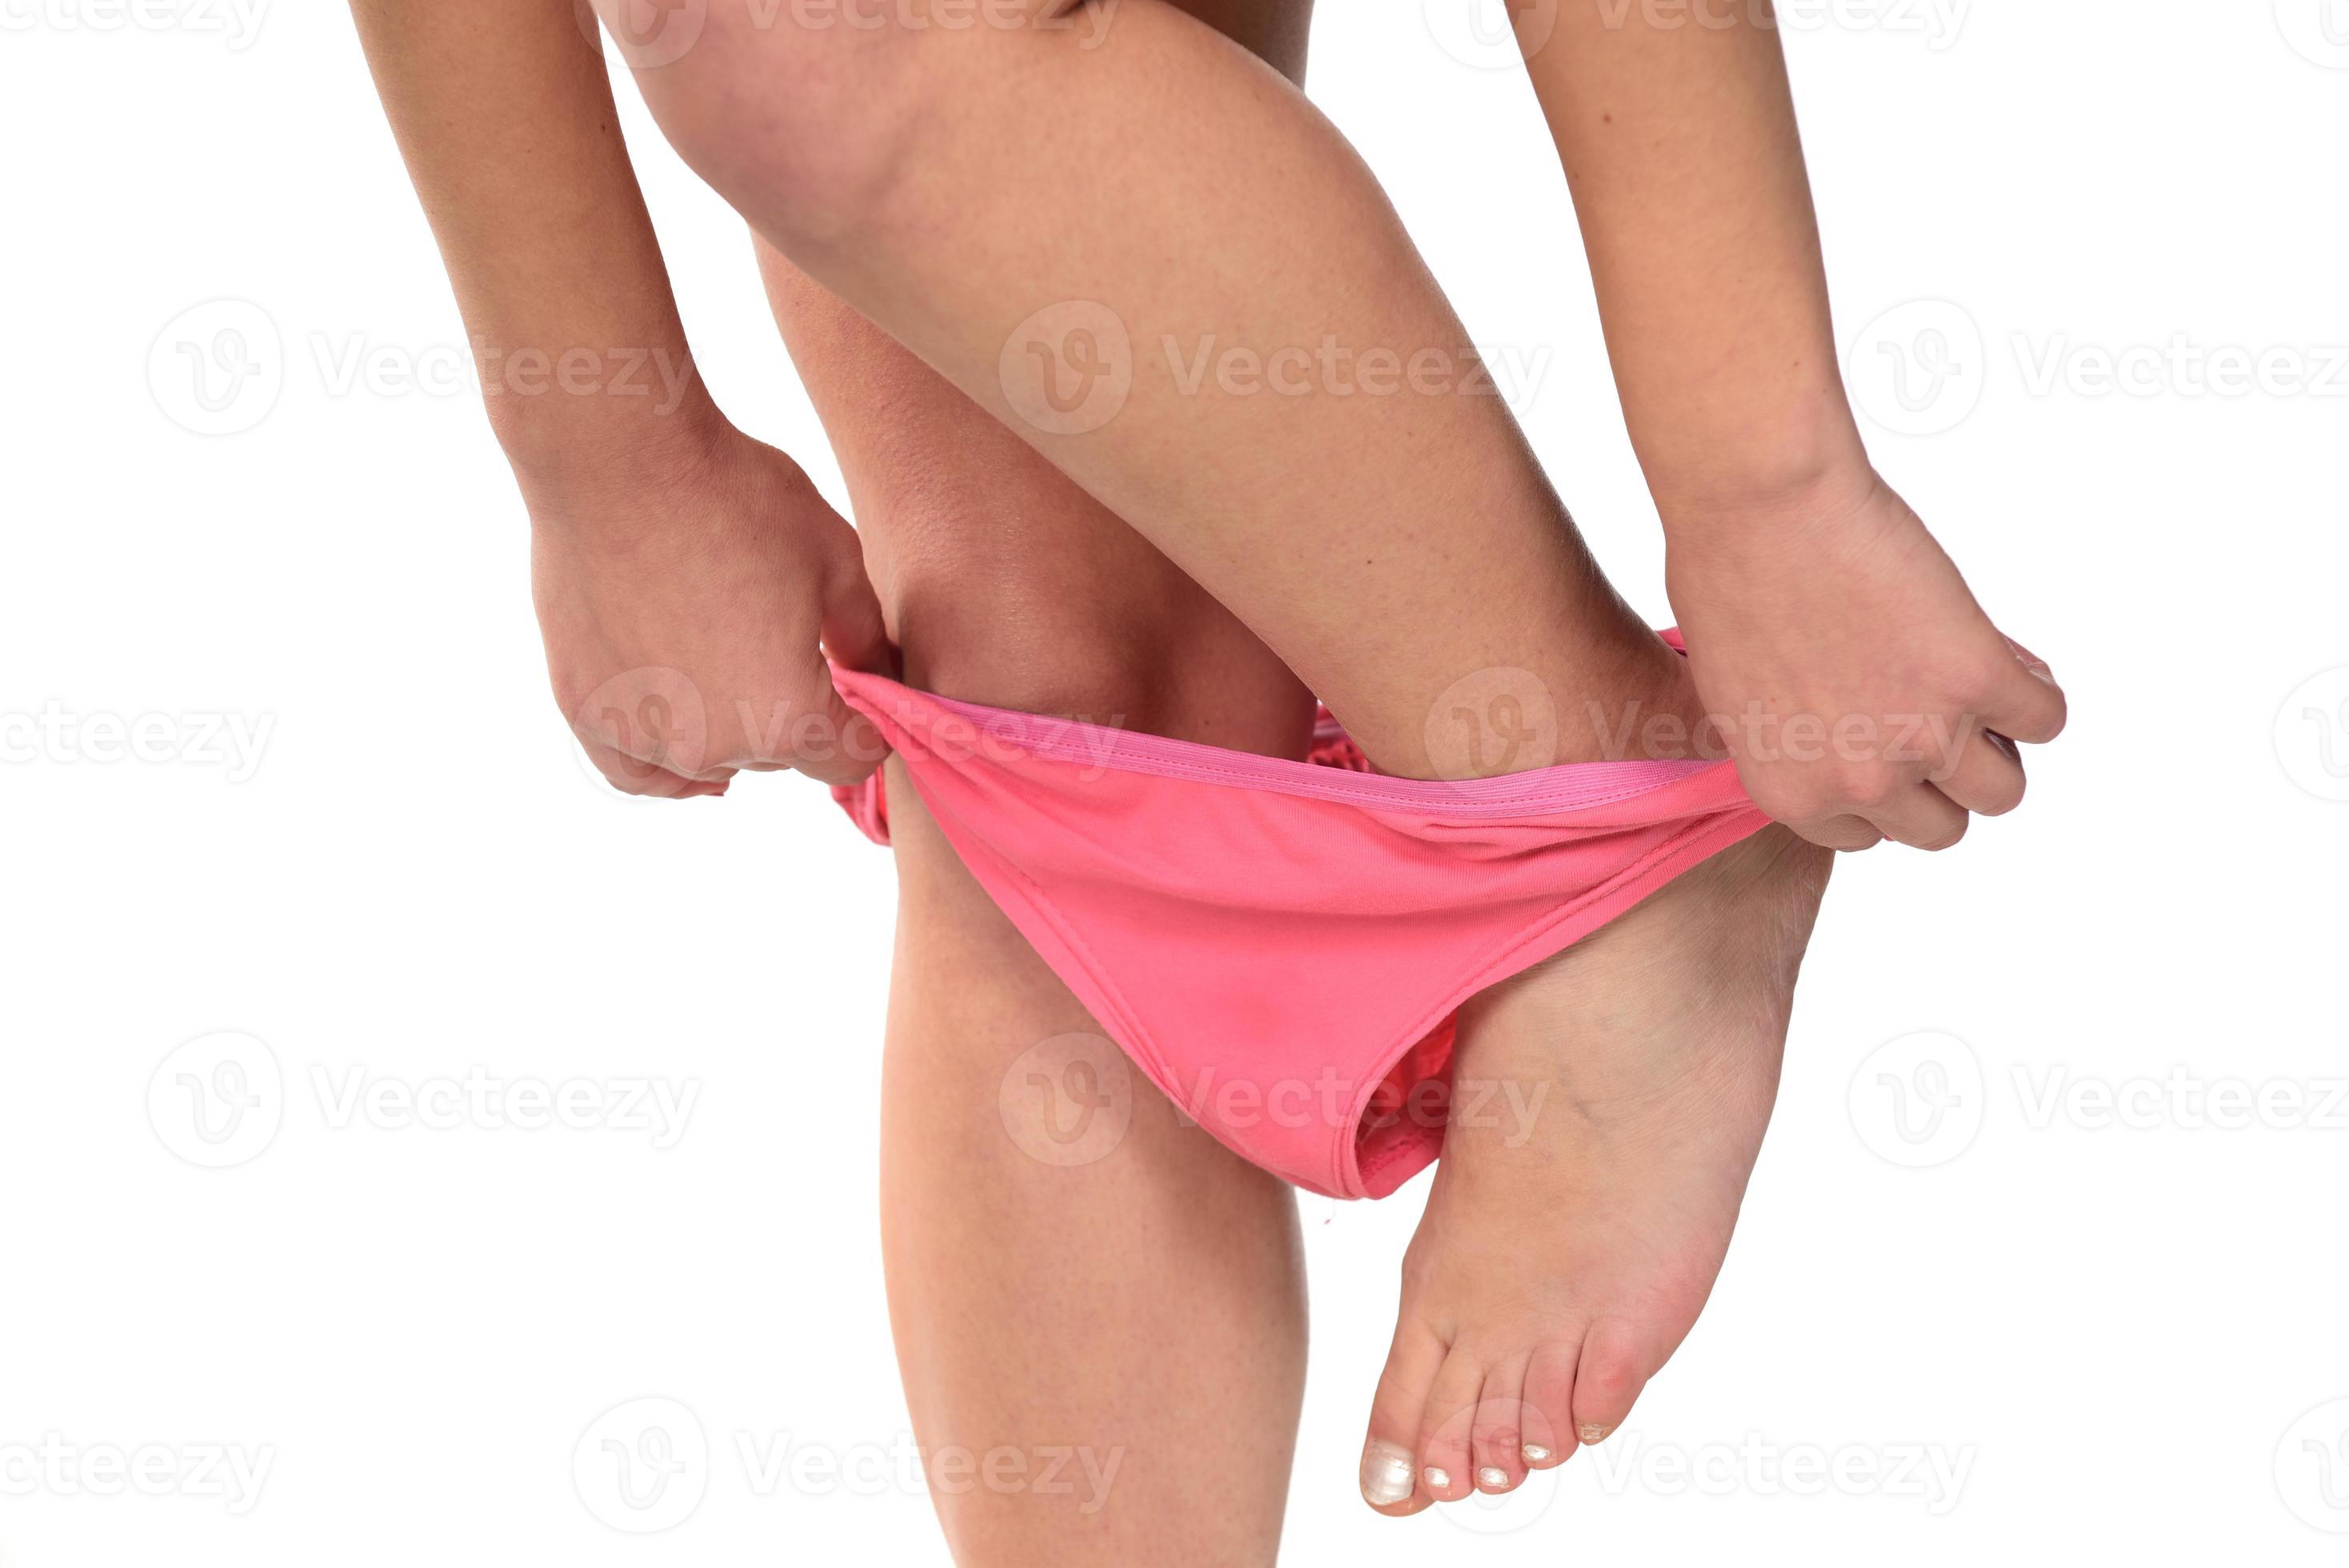 Woman taking off panties